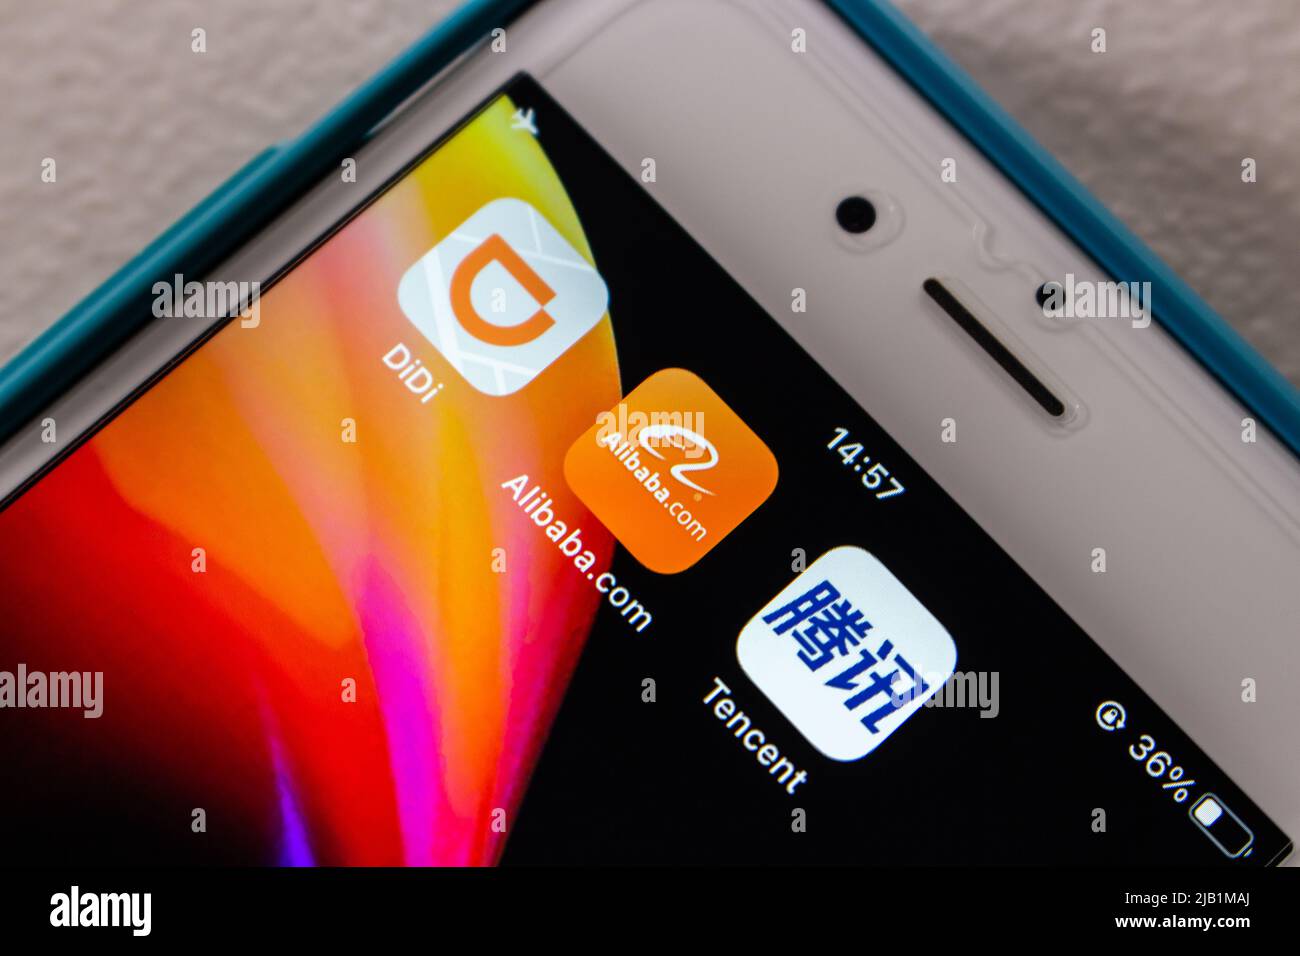 Kumamoto, JAPON - août 10 2021 : image conceptuelle des icônes Didi, Alibaba et Tencent sur iPhone sur table blanche. Banque D'Images